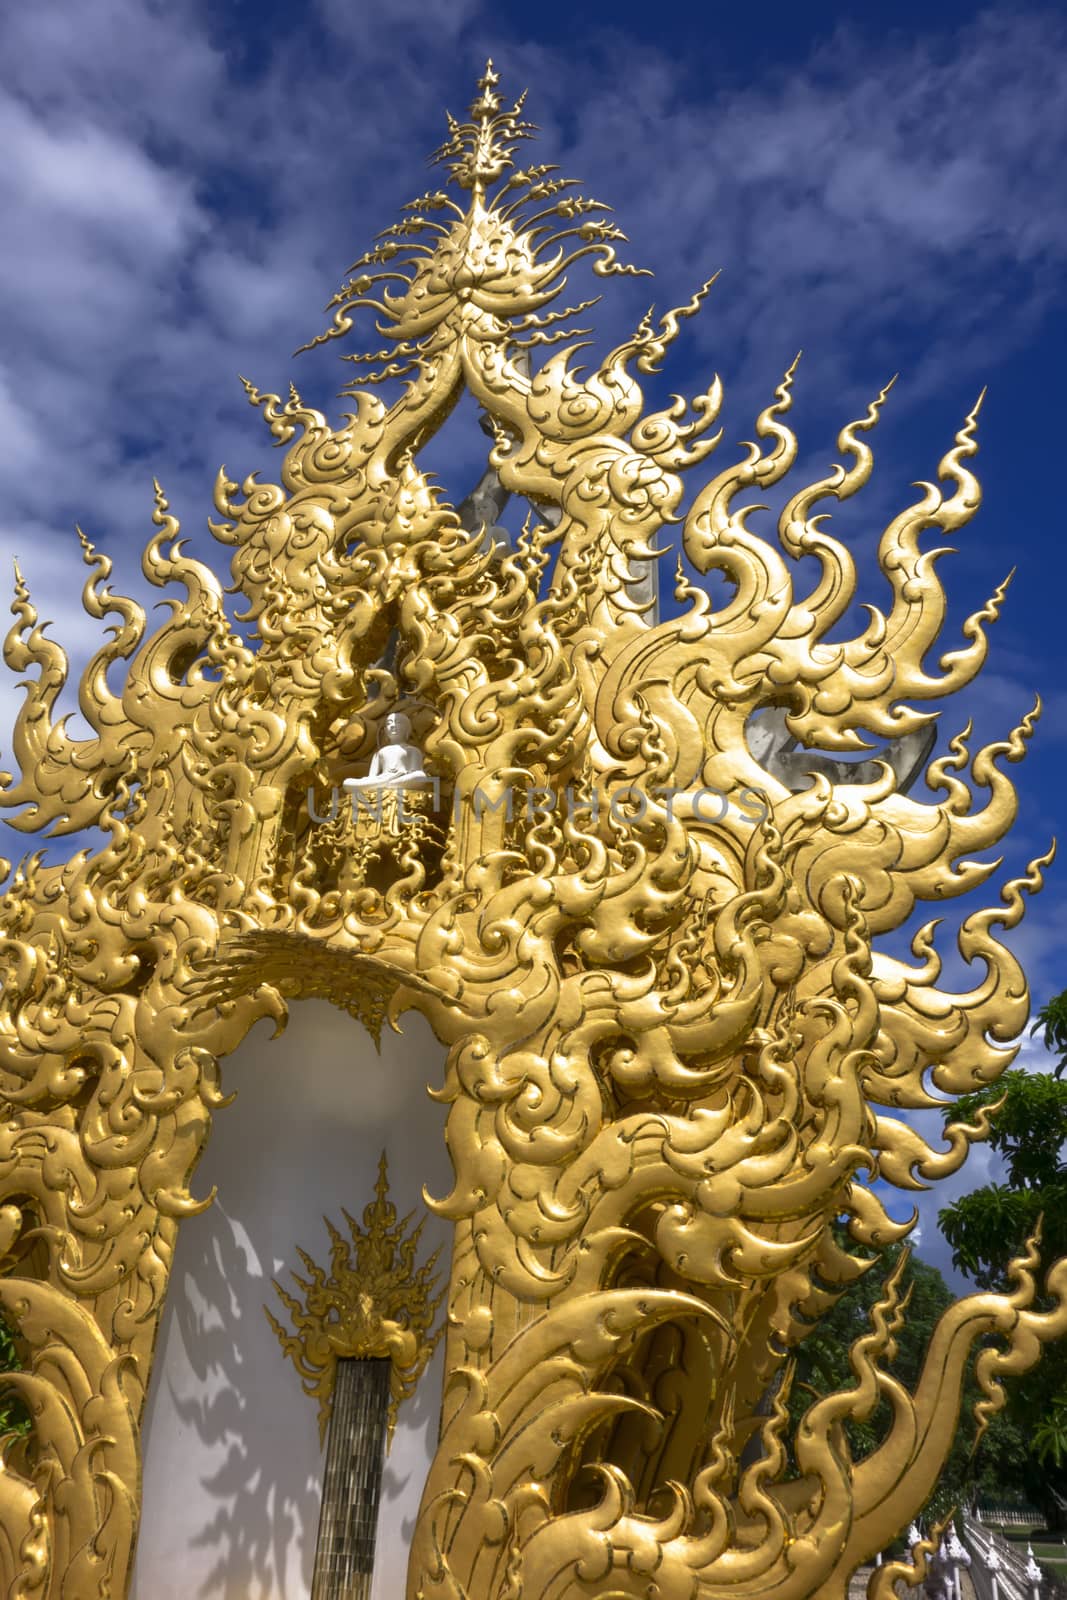 Shining Buddha. Wat Rong Khun, Chiang Rai Thailand by GNNick